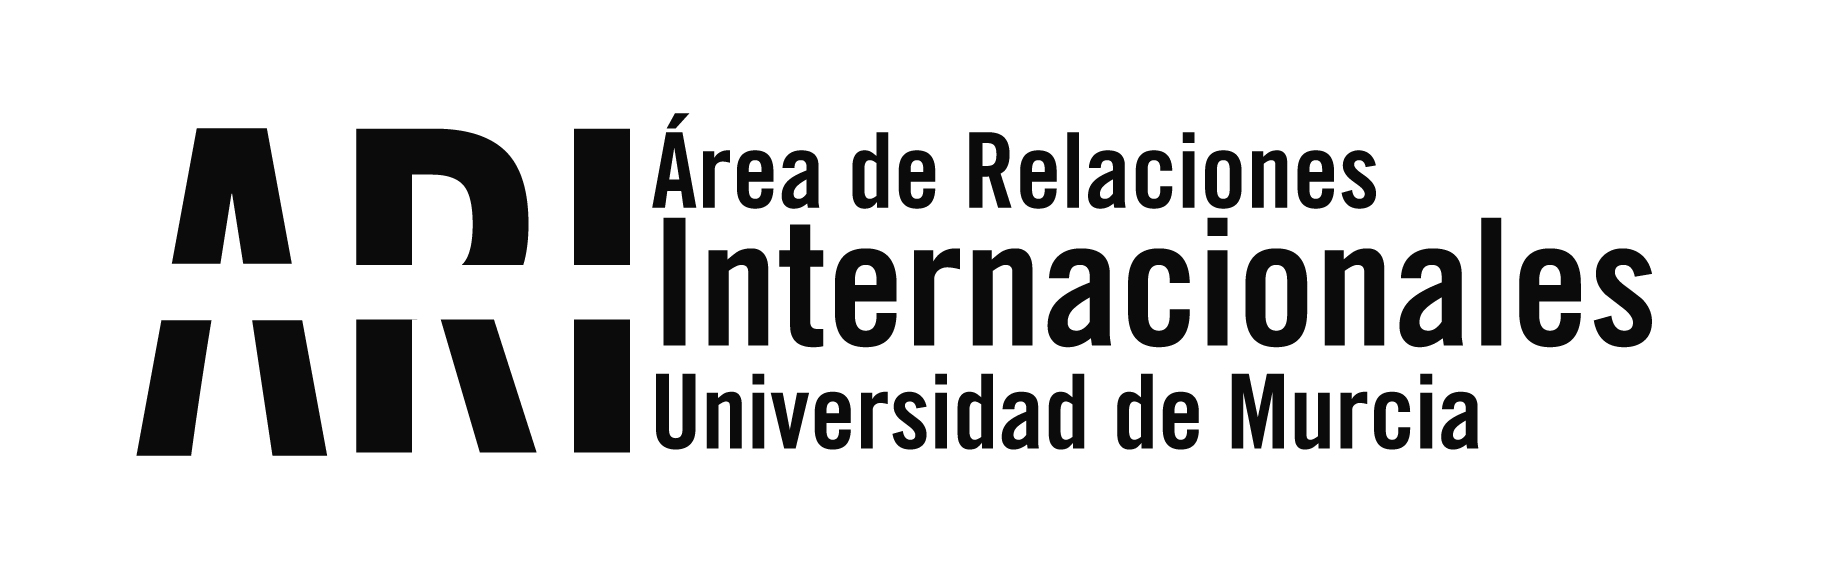 #BUMI Bienvenida Universidad de Murcia Internacional 2018-19 2o Cuatrimestre - Área de Relaciones Internacionales